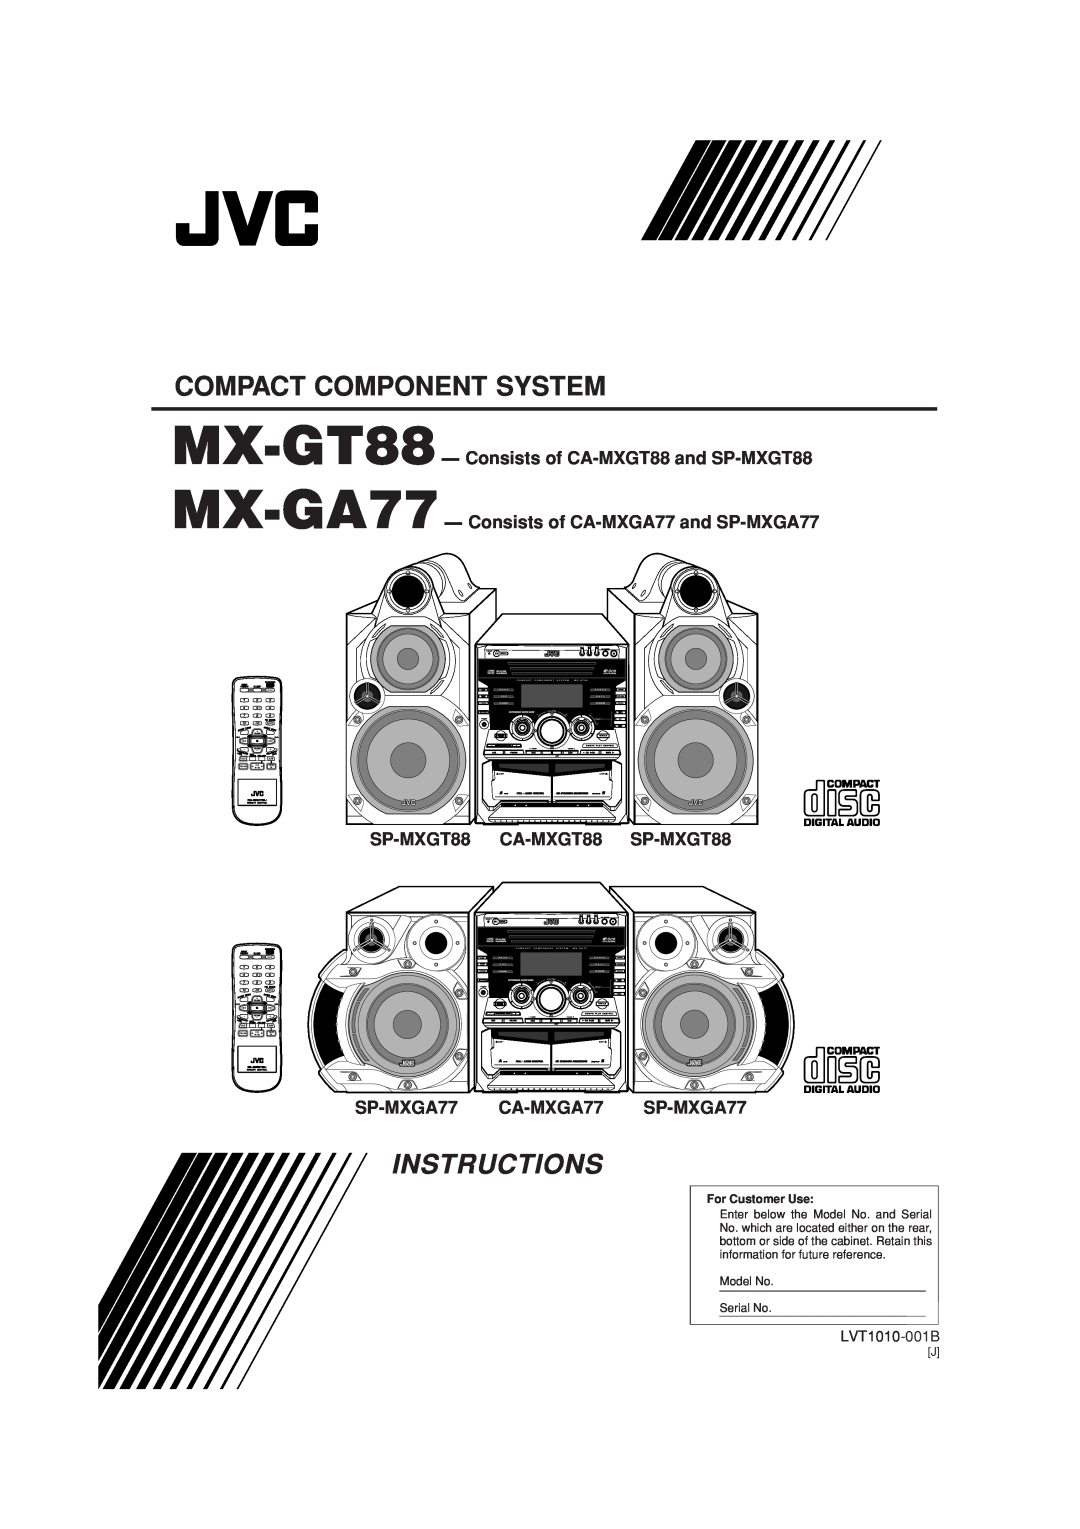 JVC SP-MXGT88 manual Instructions, CA-MXGT88, SP-MXGA77 CA-MXGA77 SP-MXGA77, Compact Component System, LVT1010-001B, Mode 